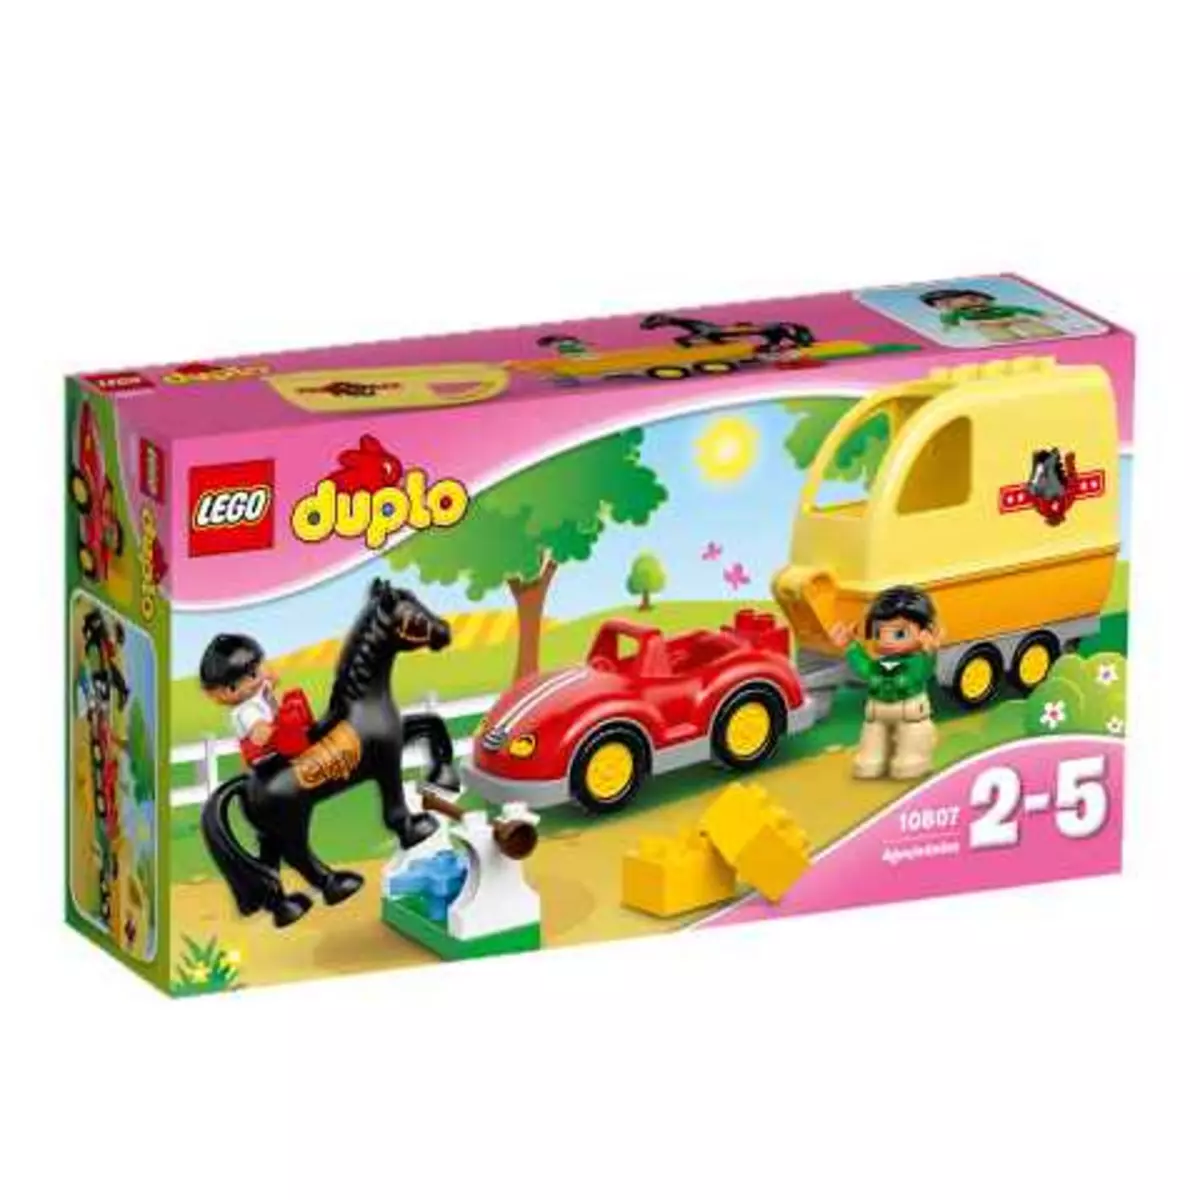 LEGO Duplo 10807 - La remorque à chevaux